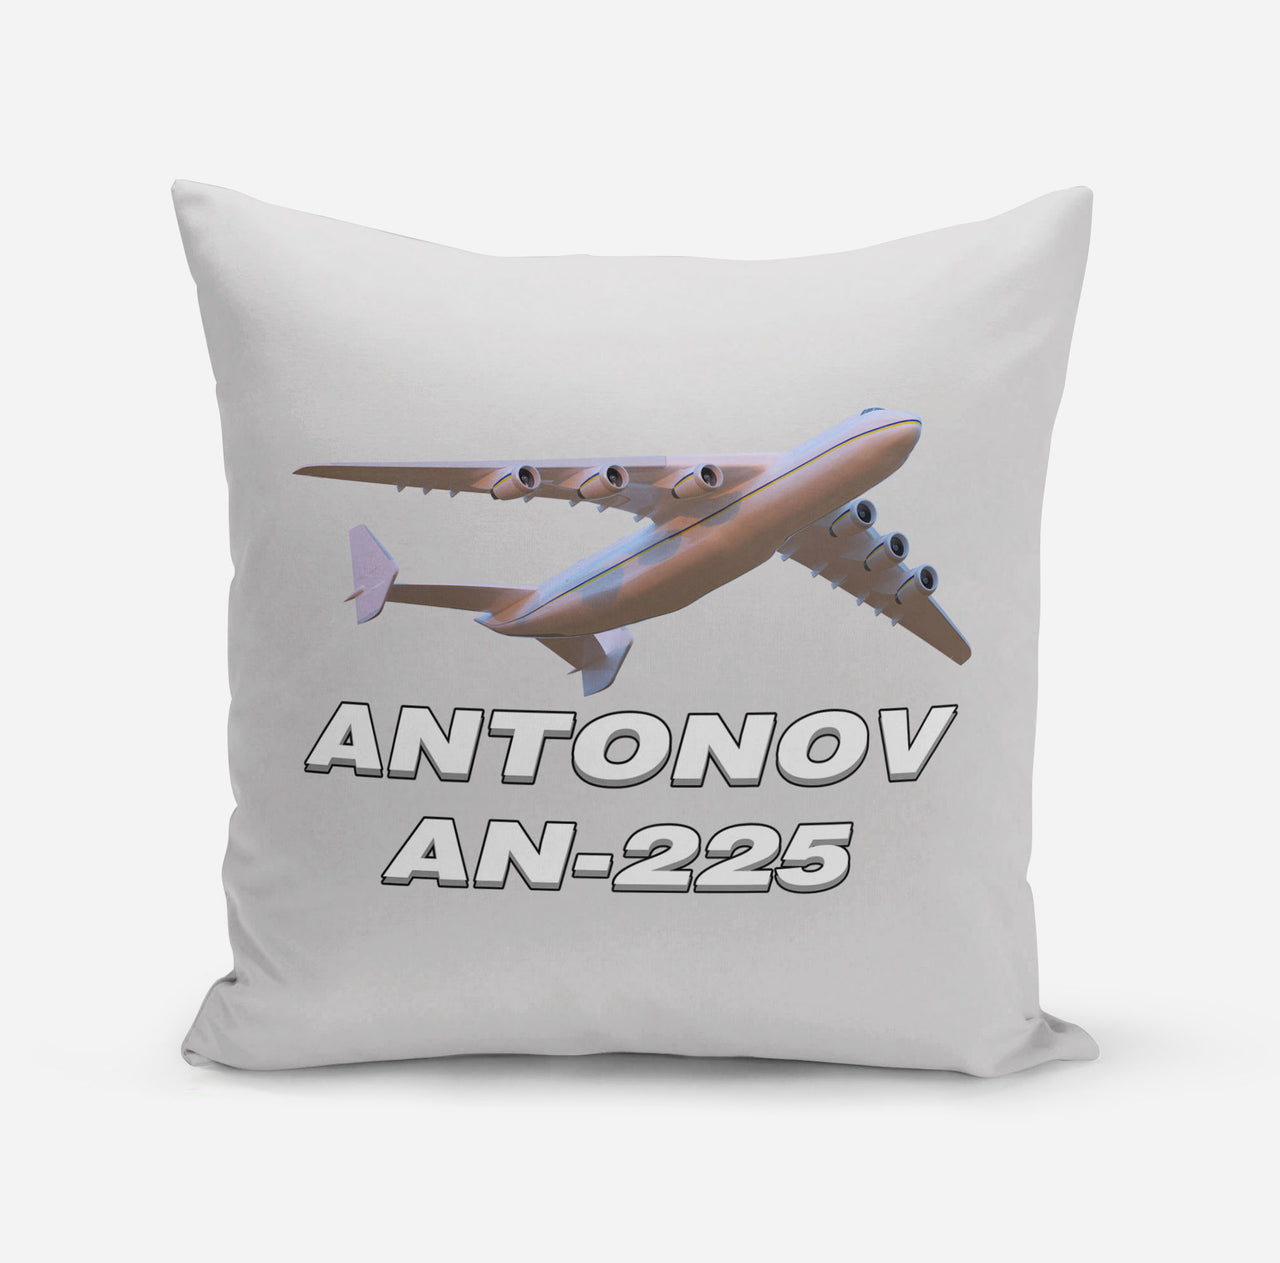 Antonov AN-225 (3) Designed Pillows